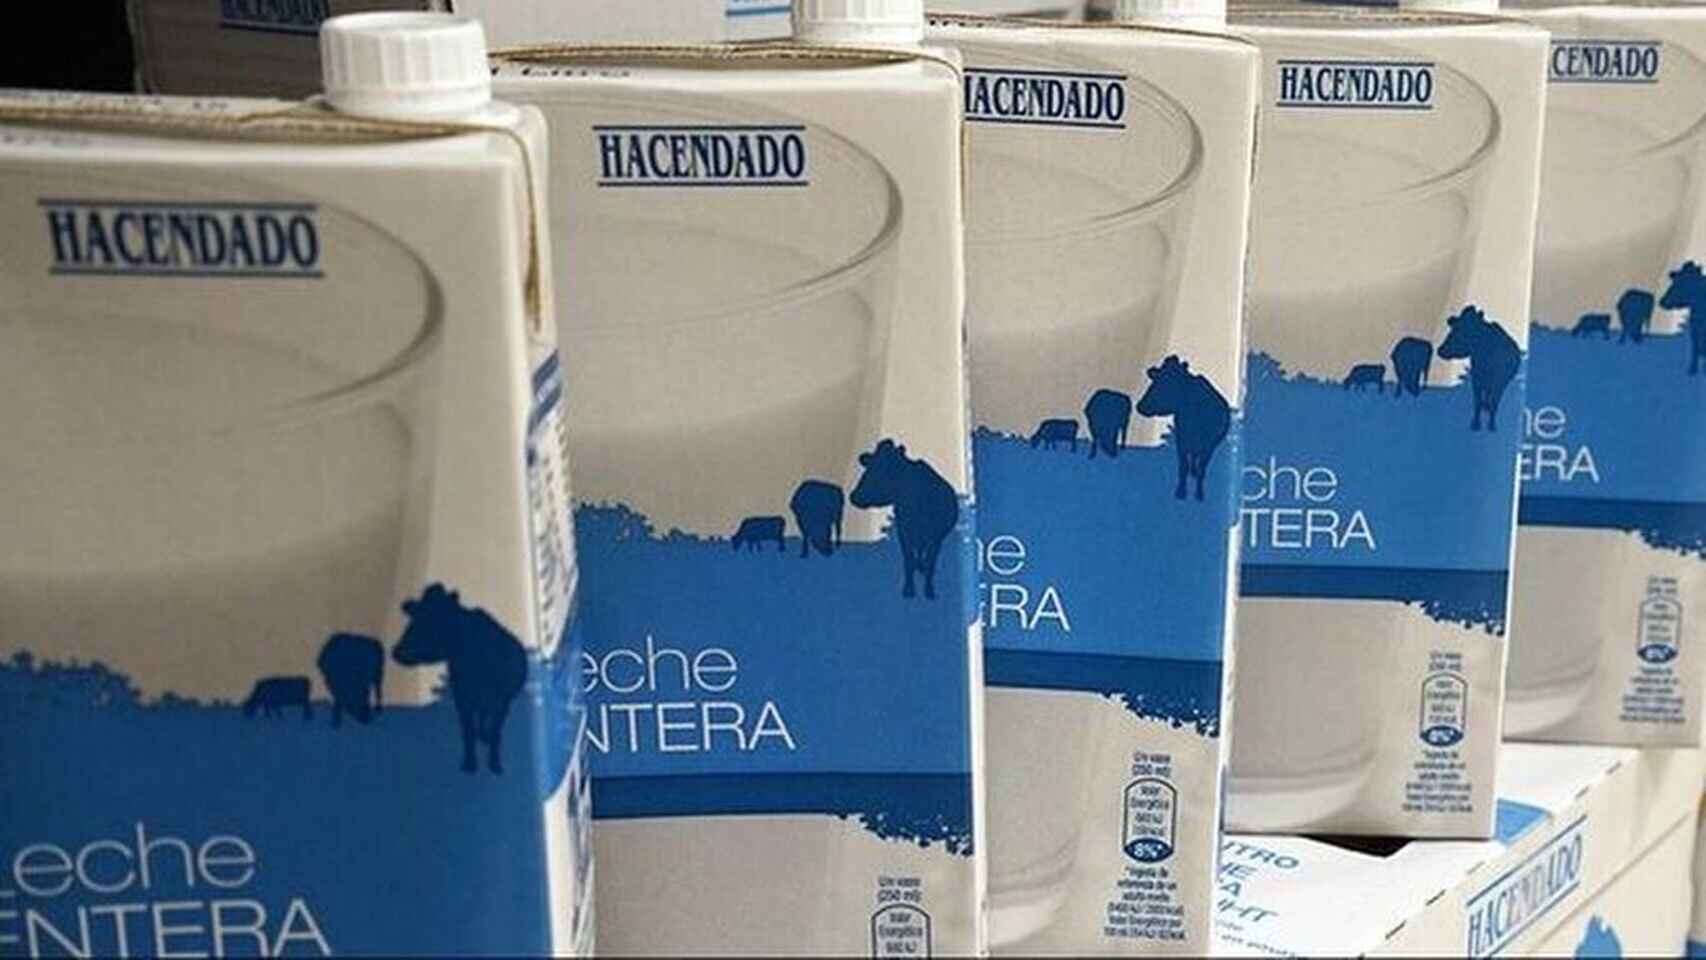 Productores de leche demandan a Mercadona por devaluación de la cadena alimentaria y venta desleal